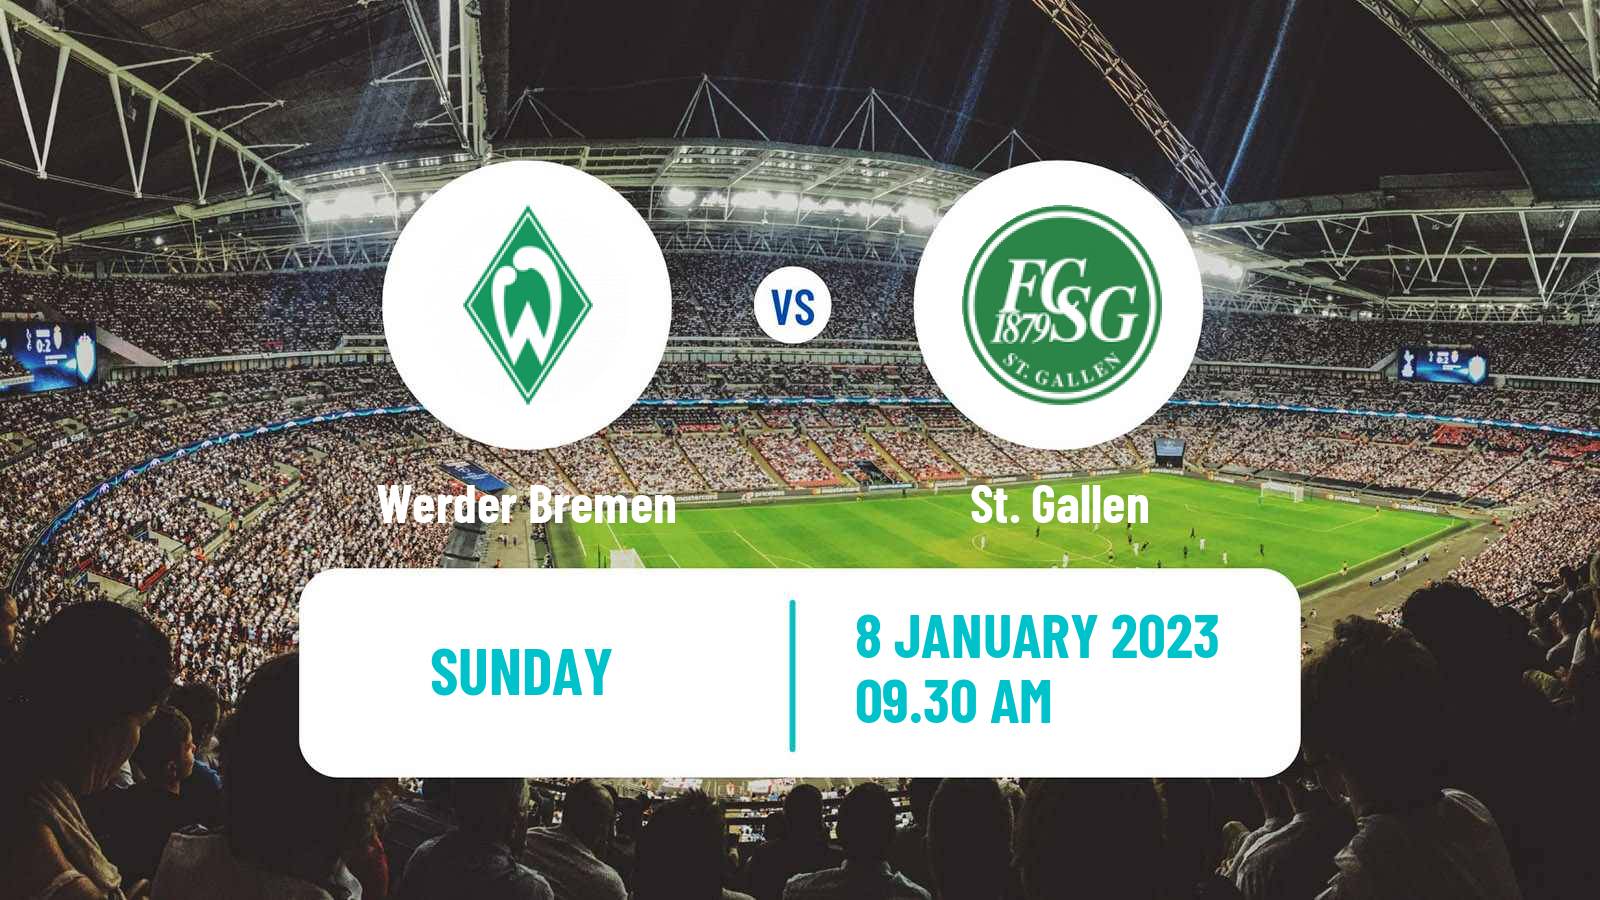 Soccer Club Friendly Werder Bremen - St. Gallen